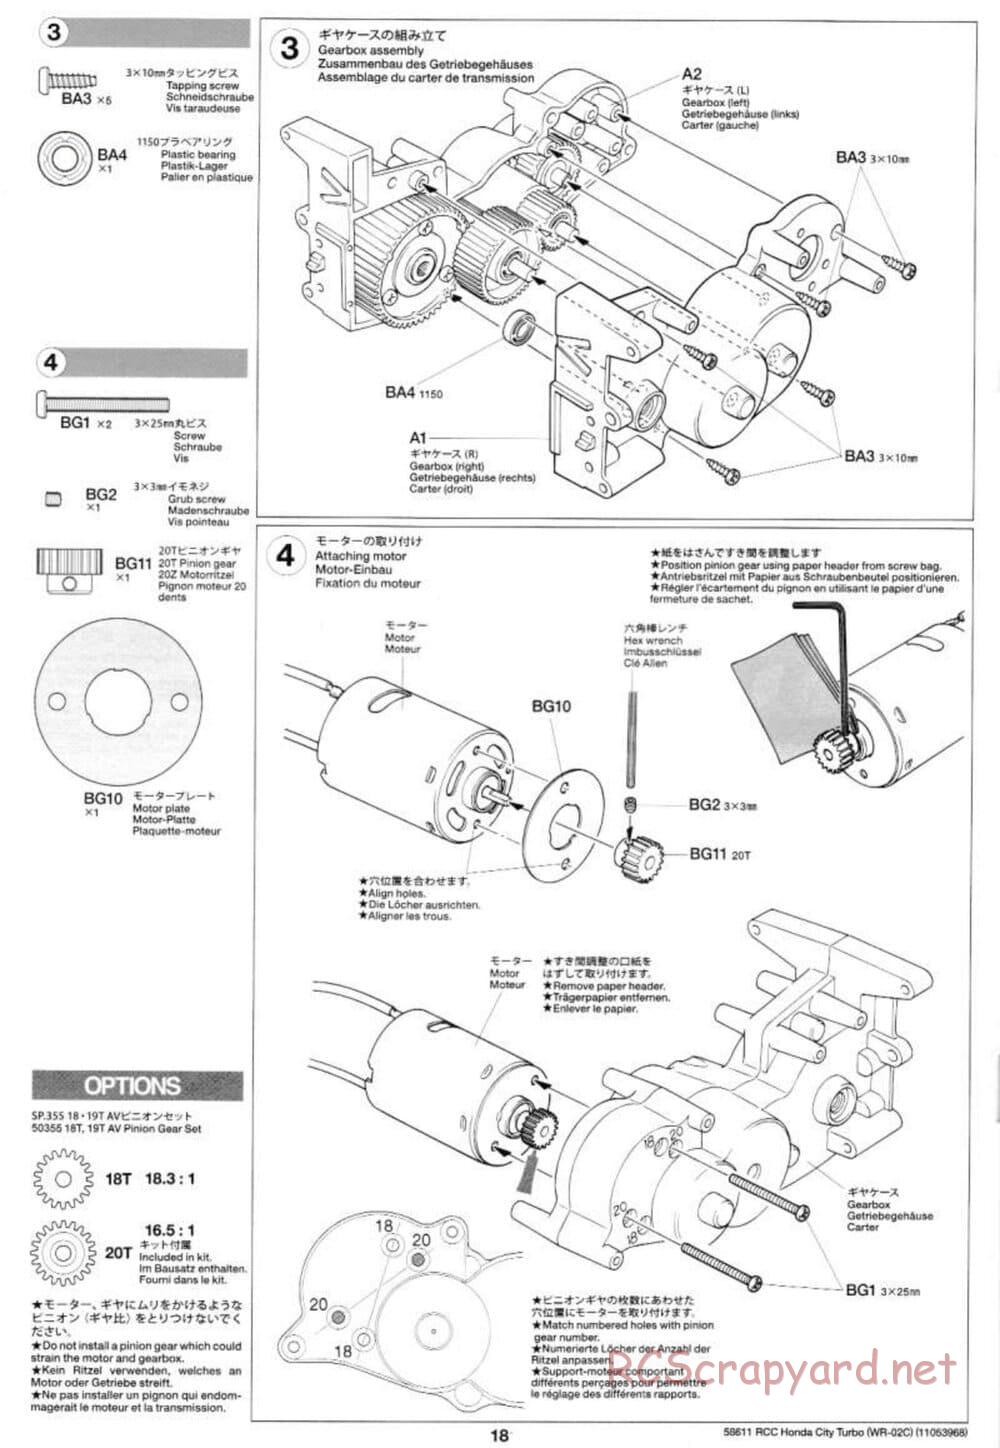 Tamiya - Honda City Turbo - WR-02C Chassis - Manual - Page 18